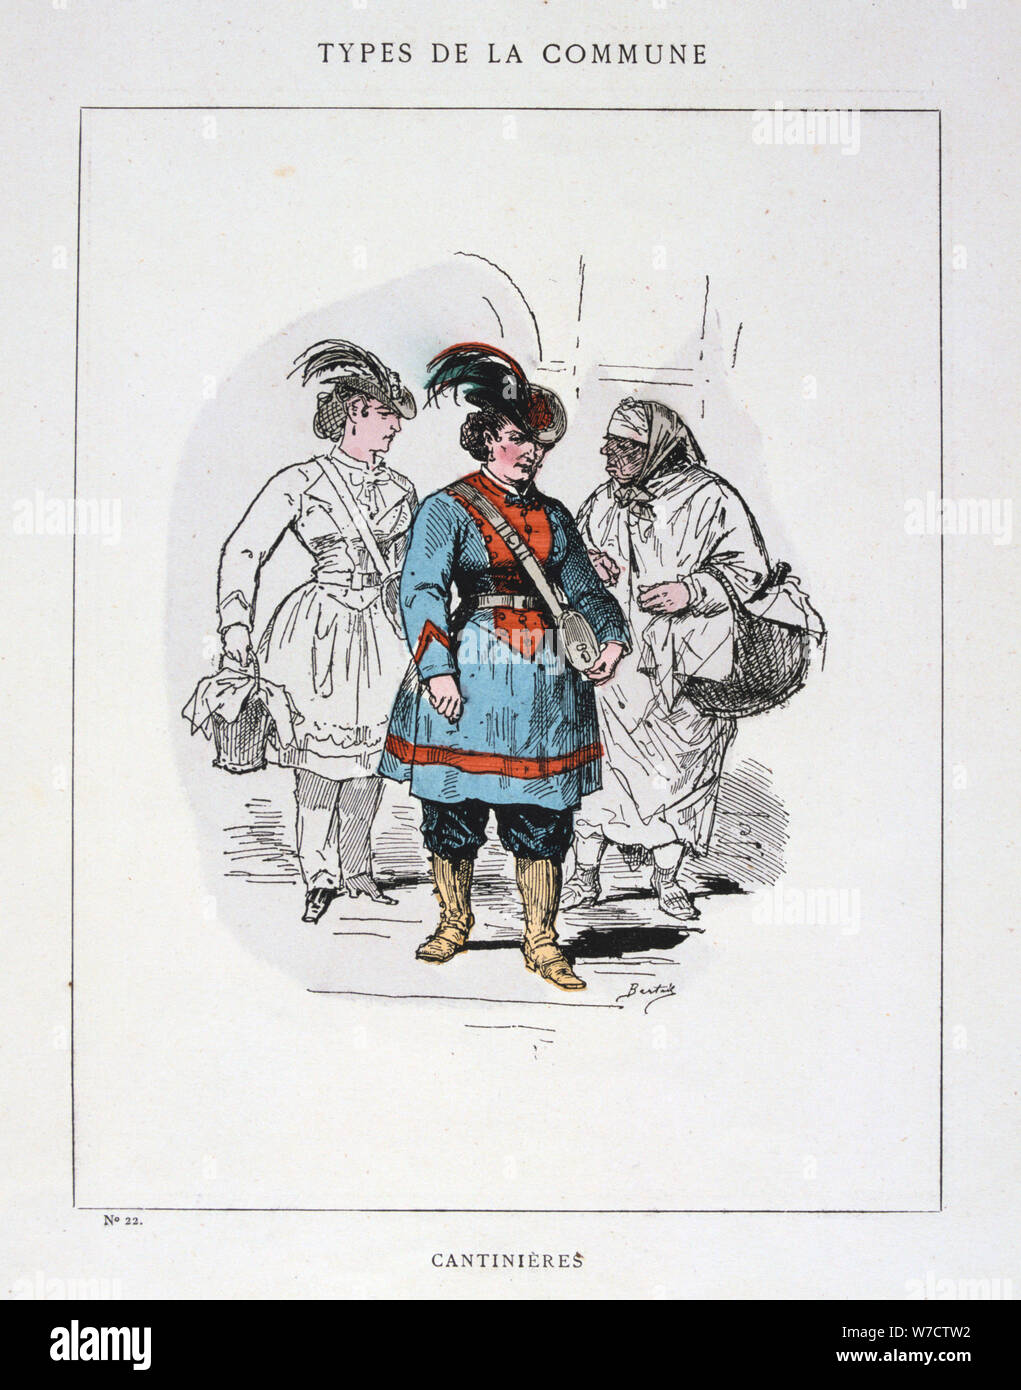 "Cantinieres', la Comune di Parigi, 1871. Artista: Anon Foto Stock